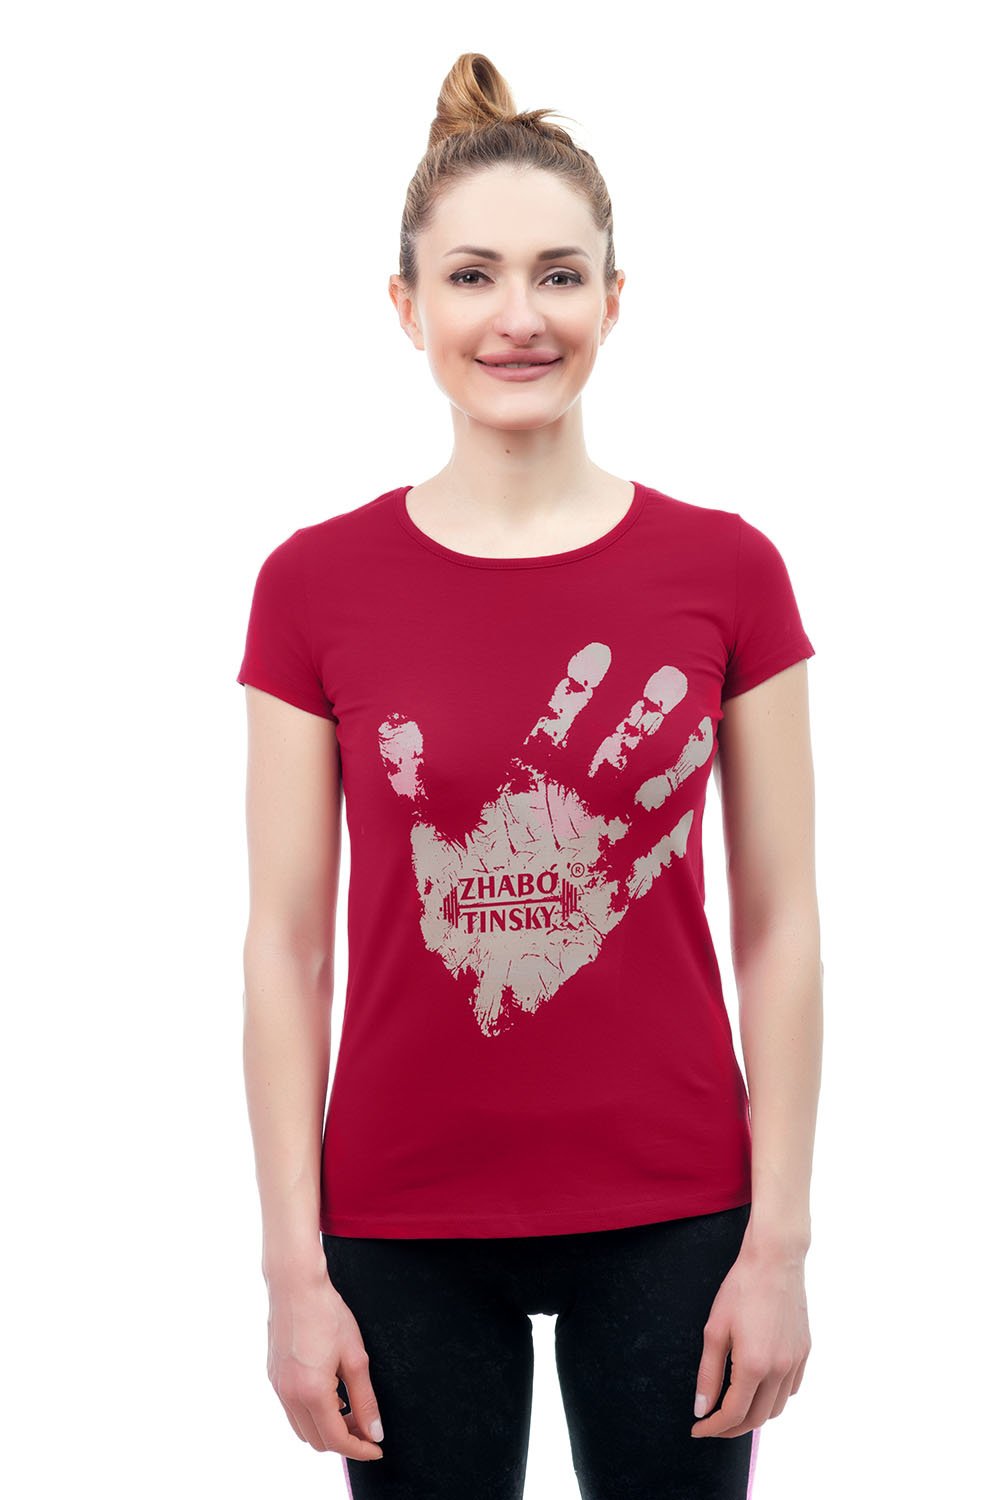 Women's T-shirt Hand of the winner, burgundy, size XS